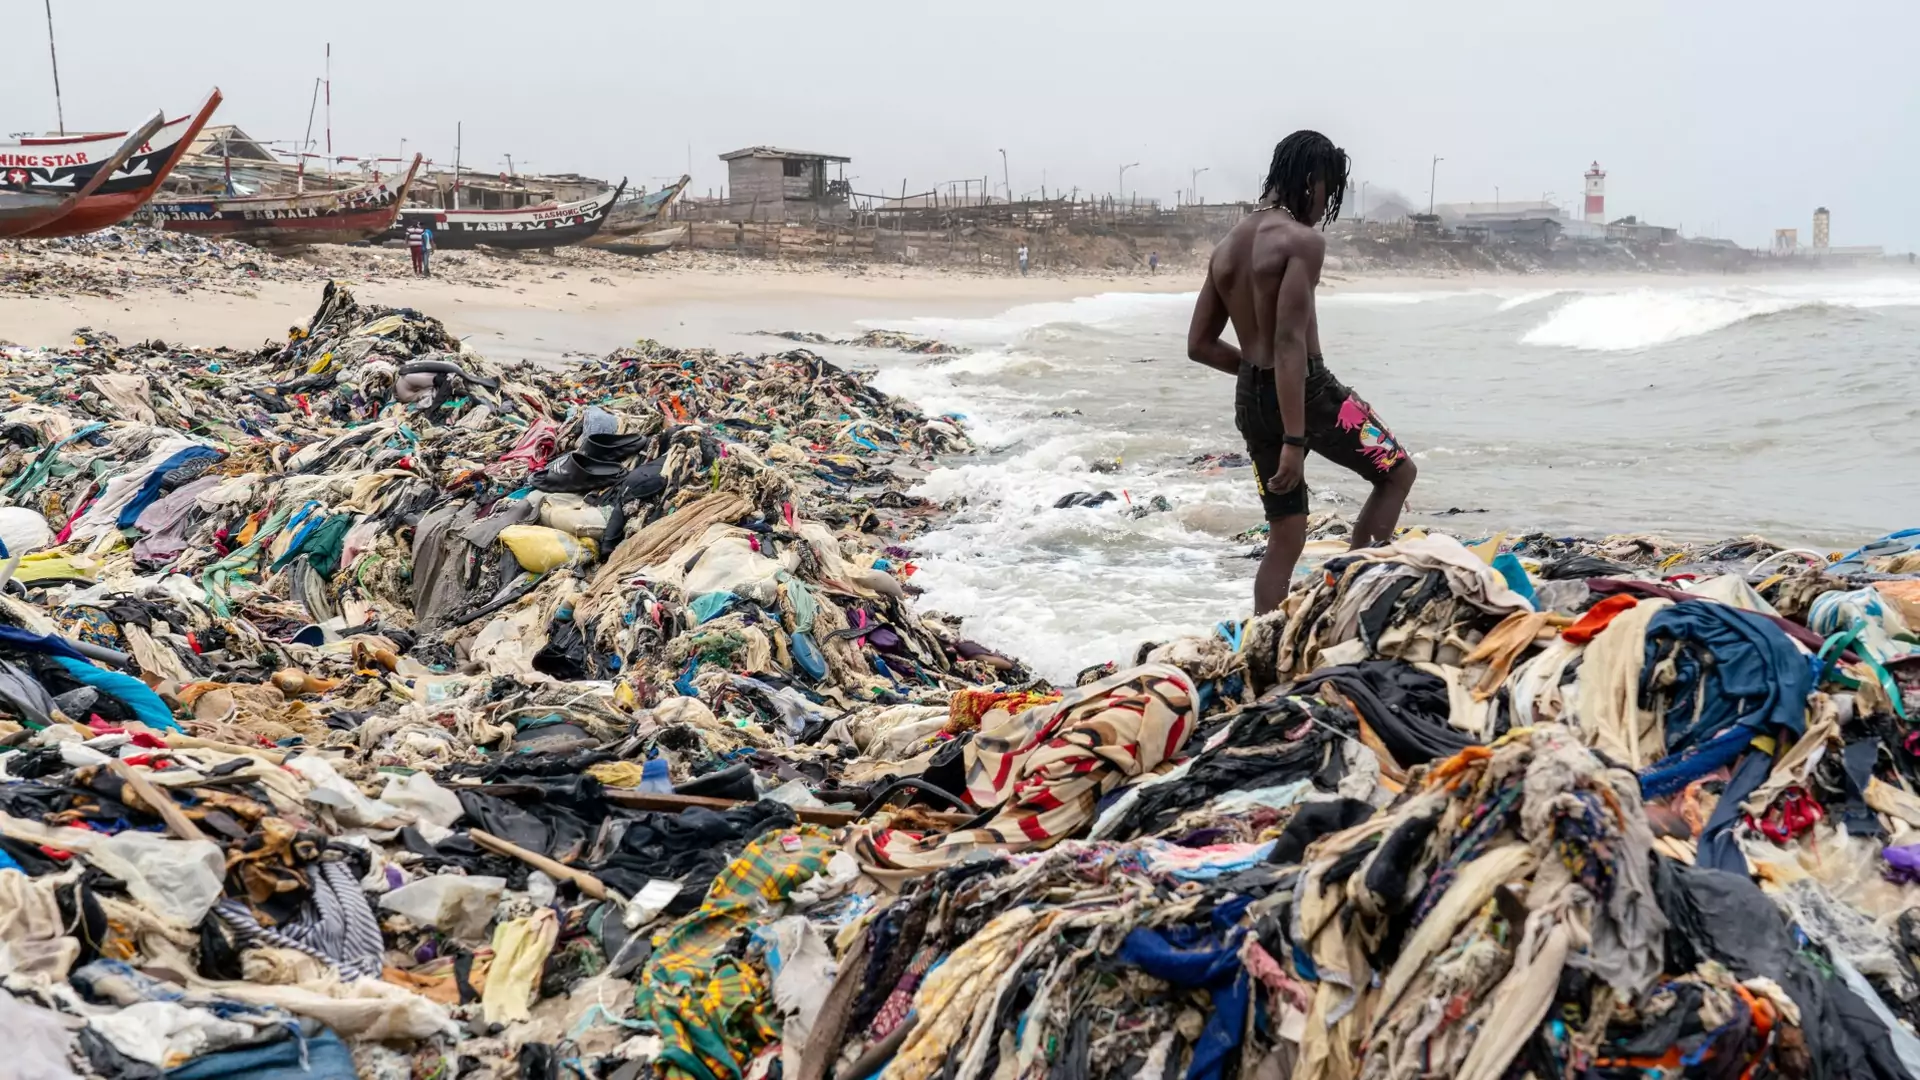 Tony używanych ubrań zalegają na plaży w stolicy Ghany. Te zdjęcia pokazują skalę problemu